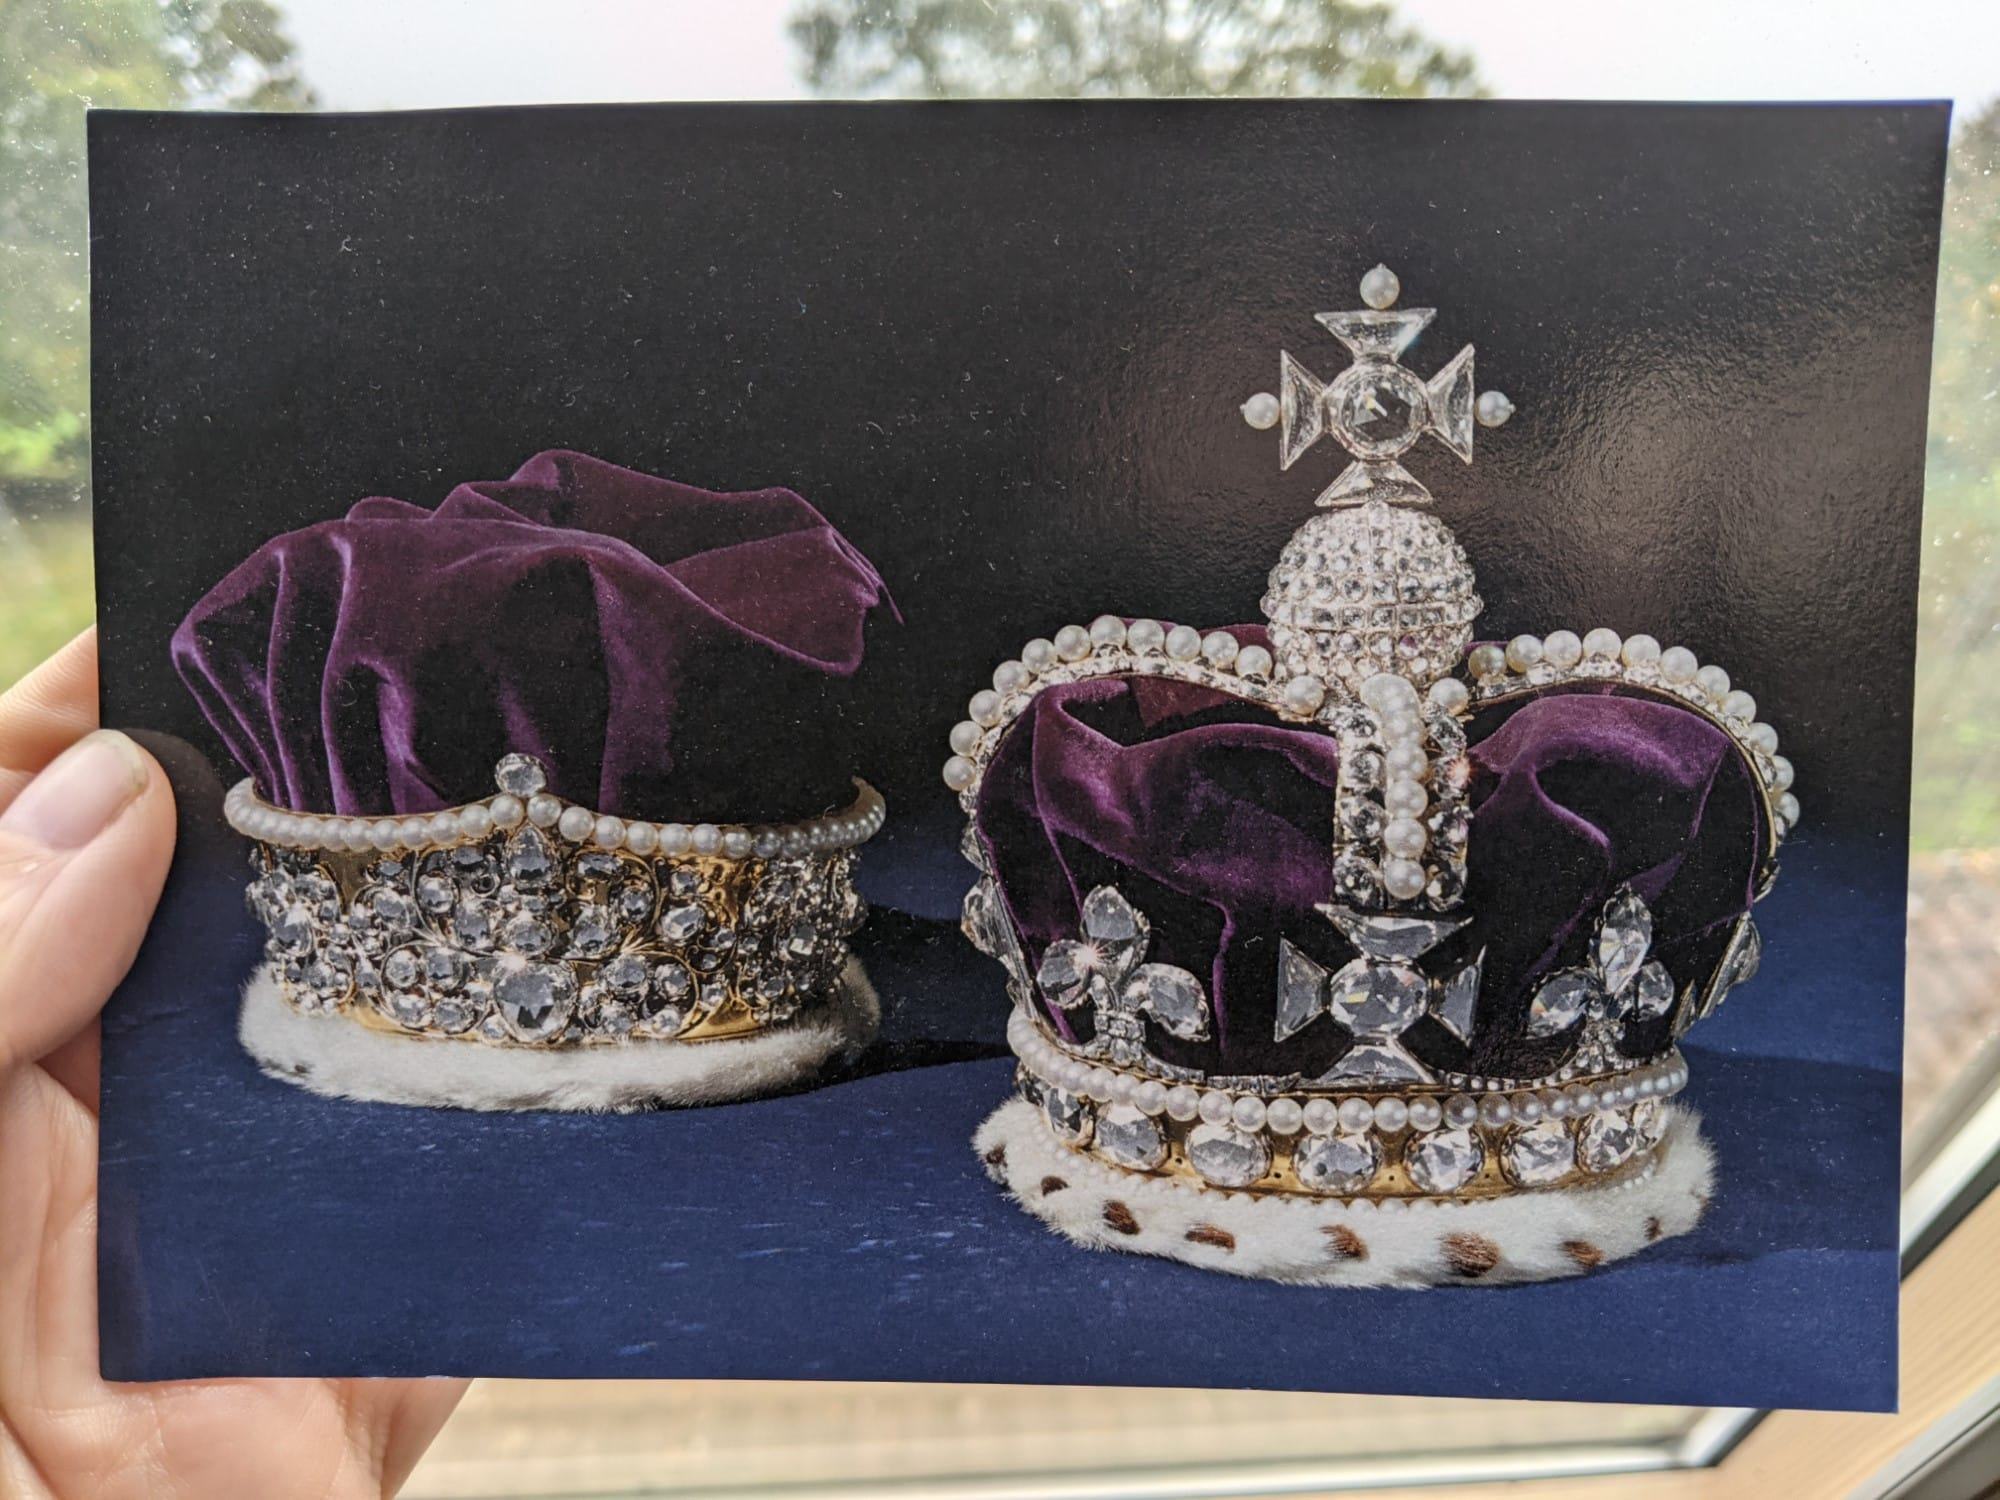 Crown Jewels Postcard